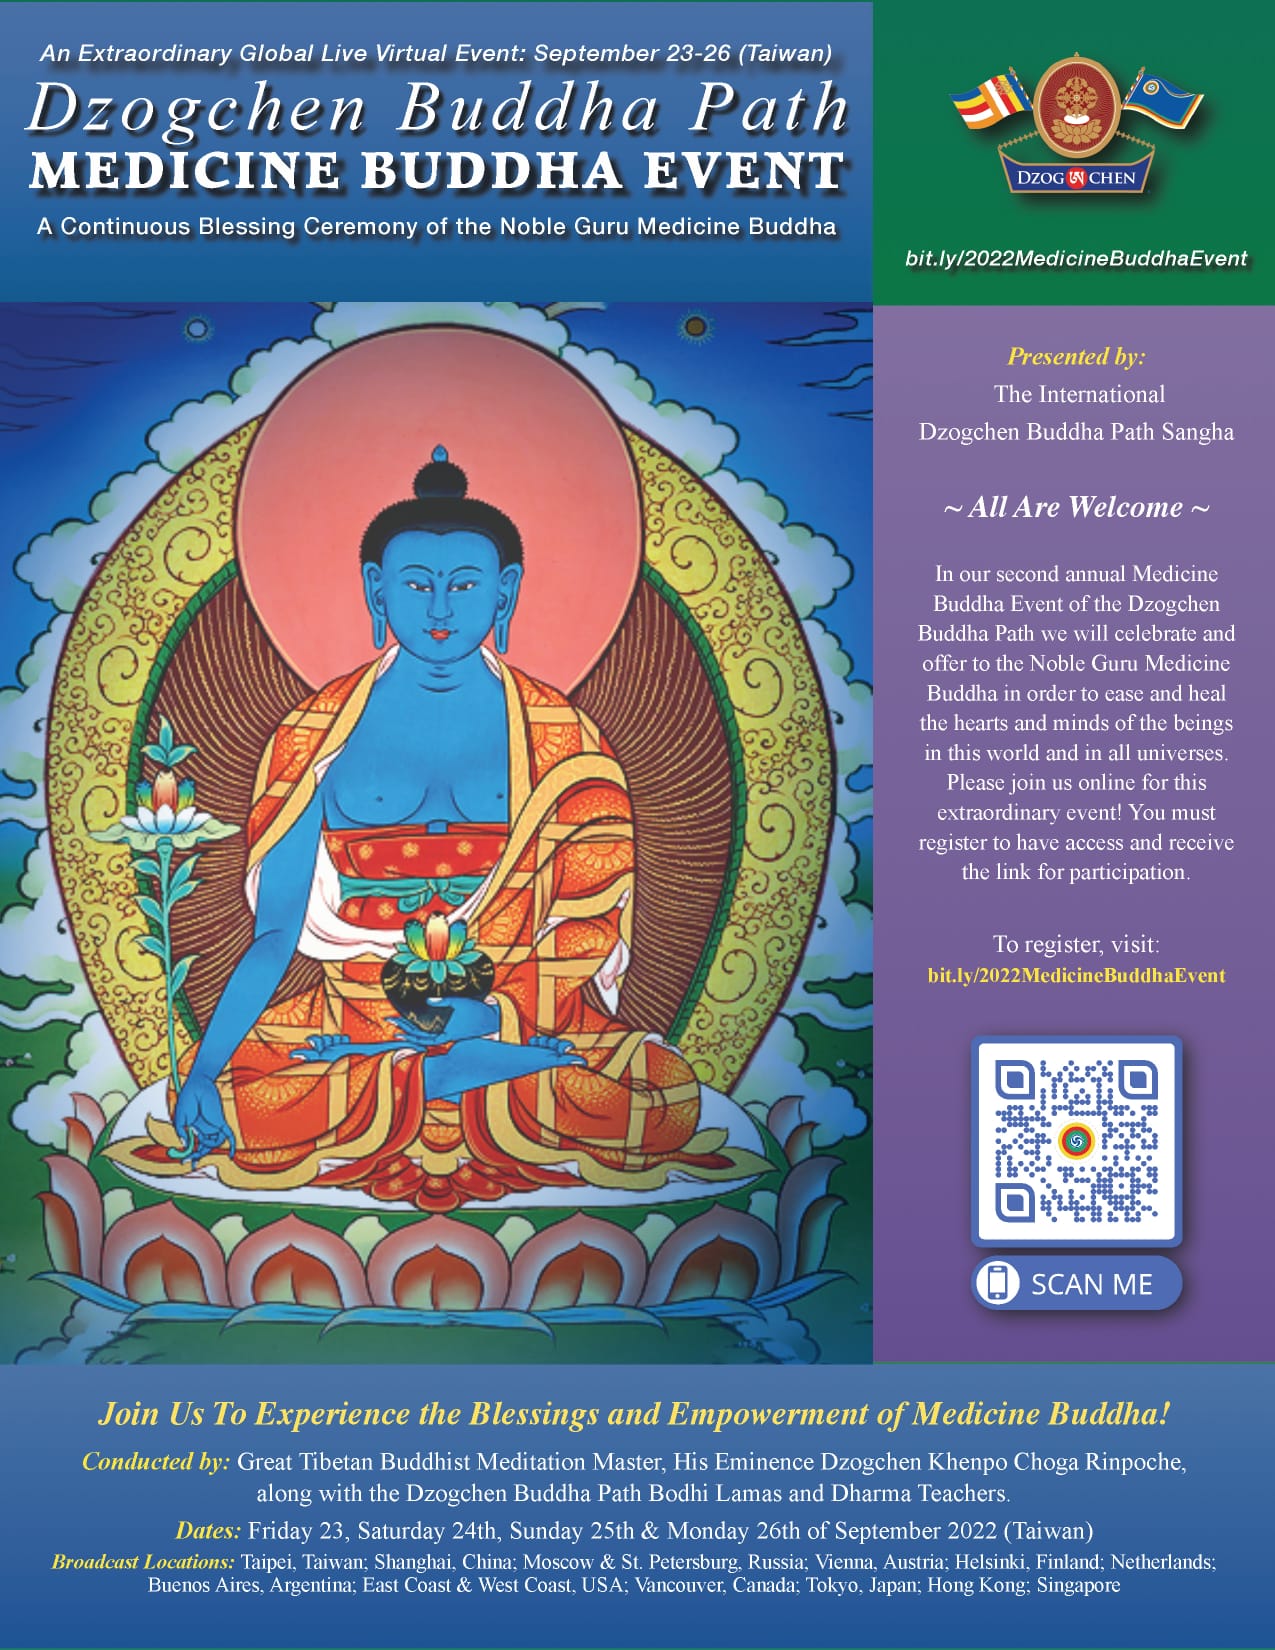 Medicine Buddha event